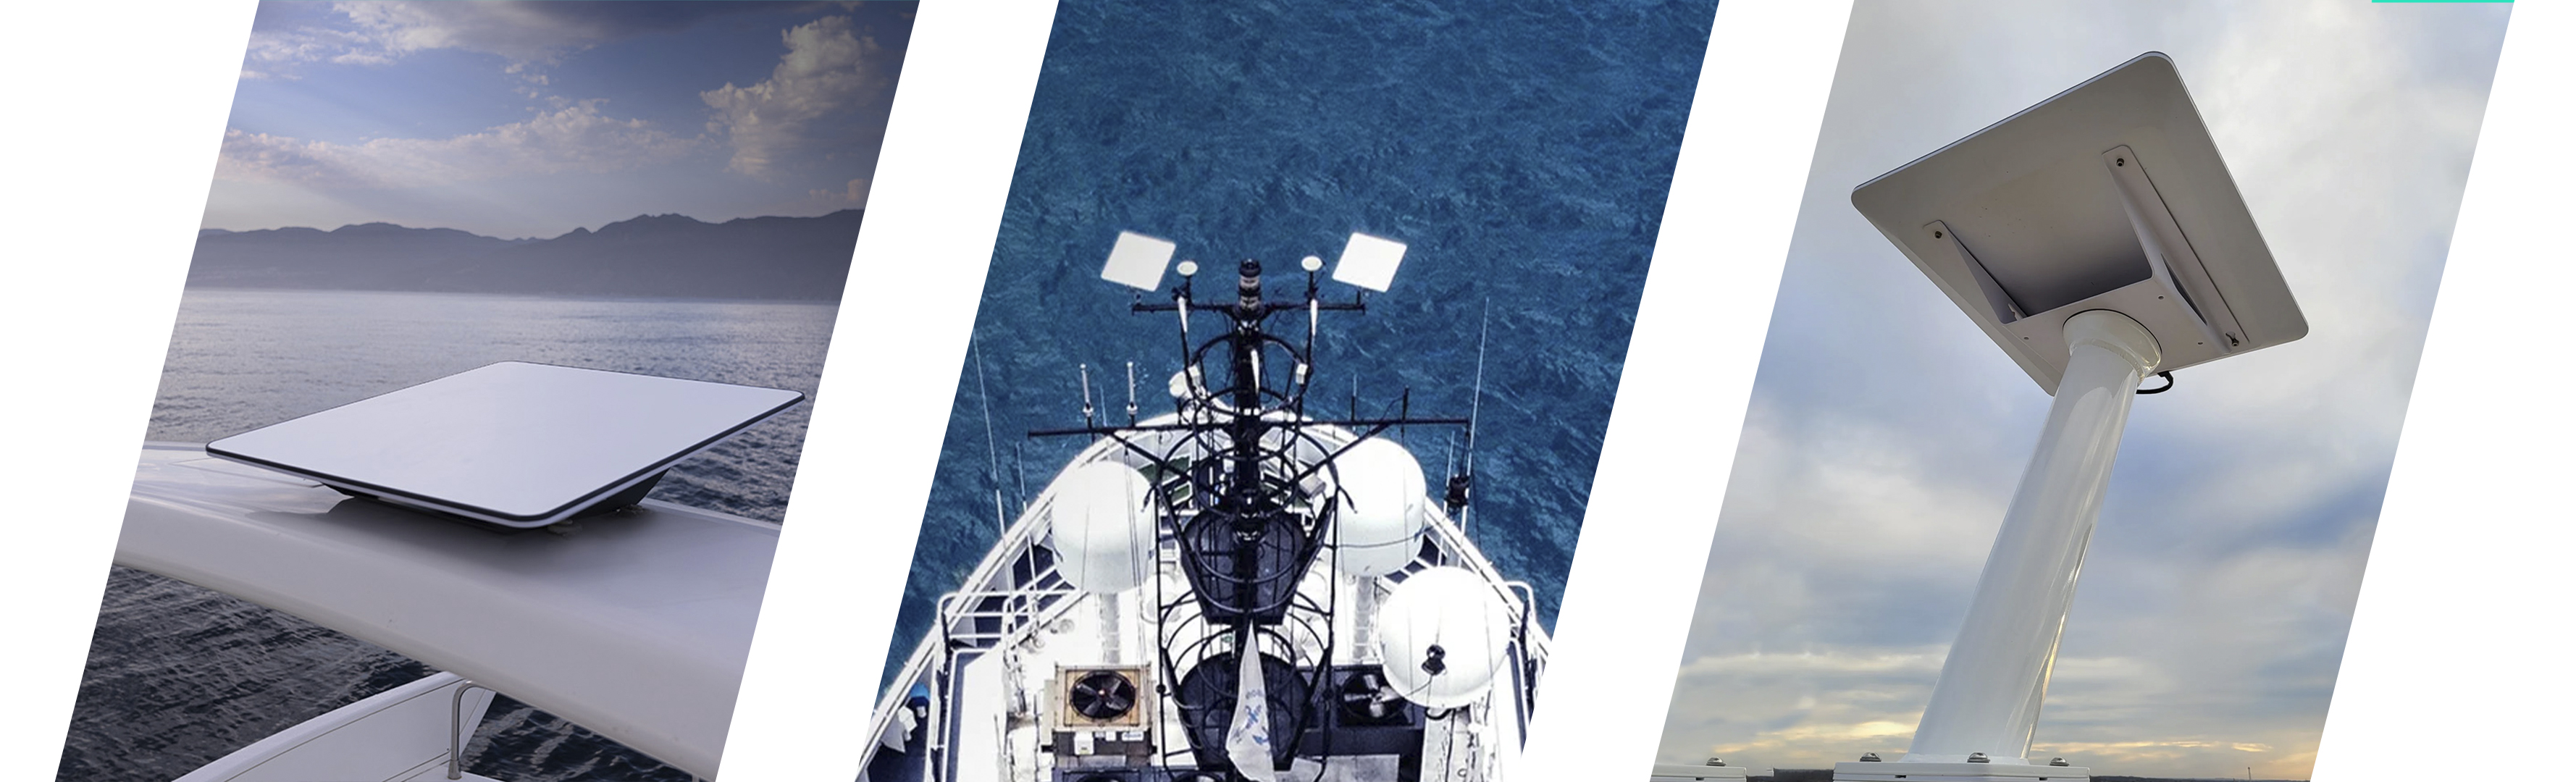 Морской спутниковый модем Starlink Internet Satellite 2gen Maritime для дрона. Купить морской старлинк для дрона под заказ на Marketnet